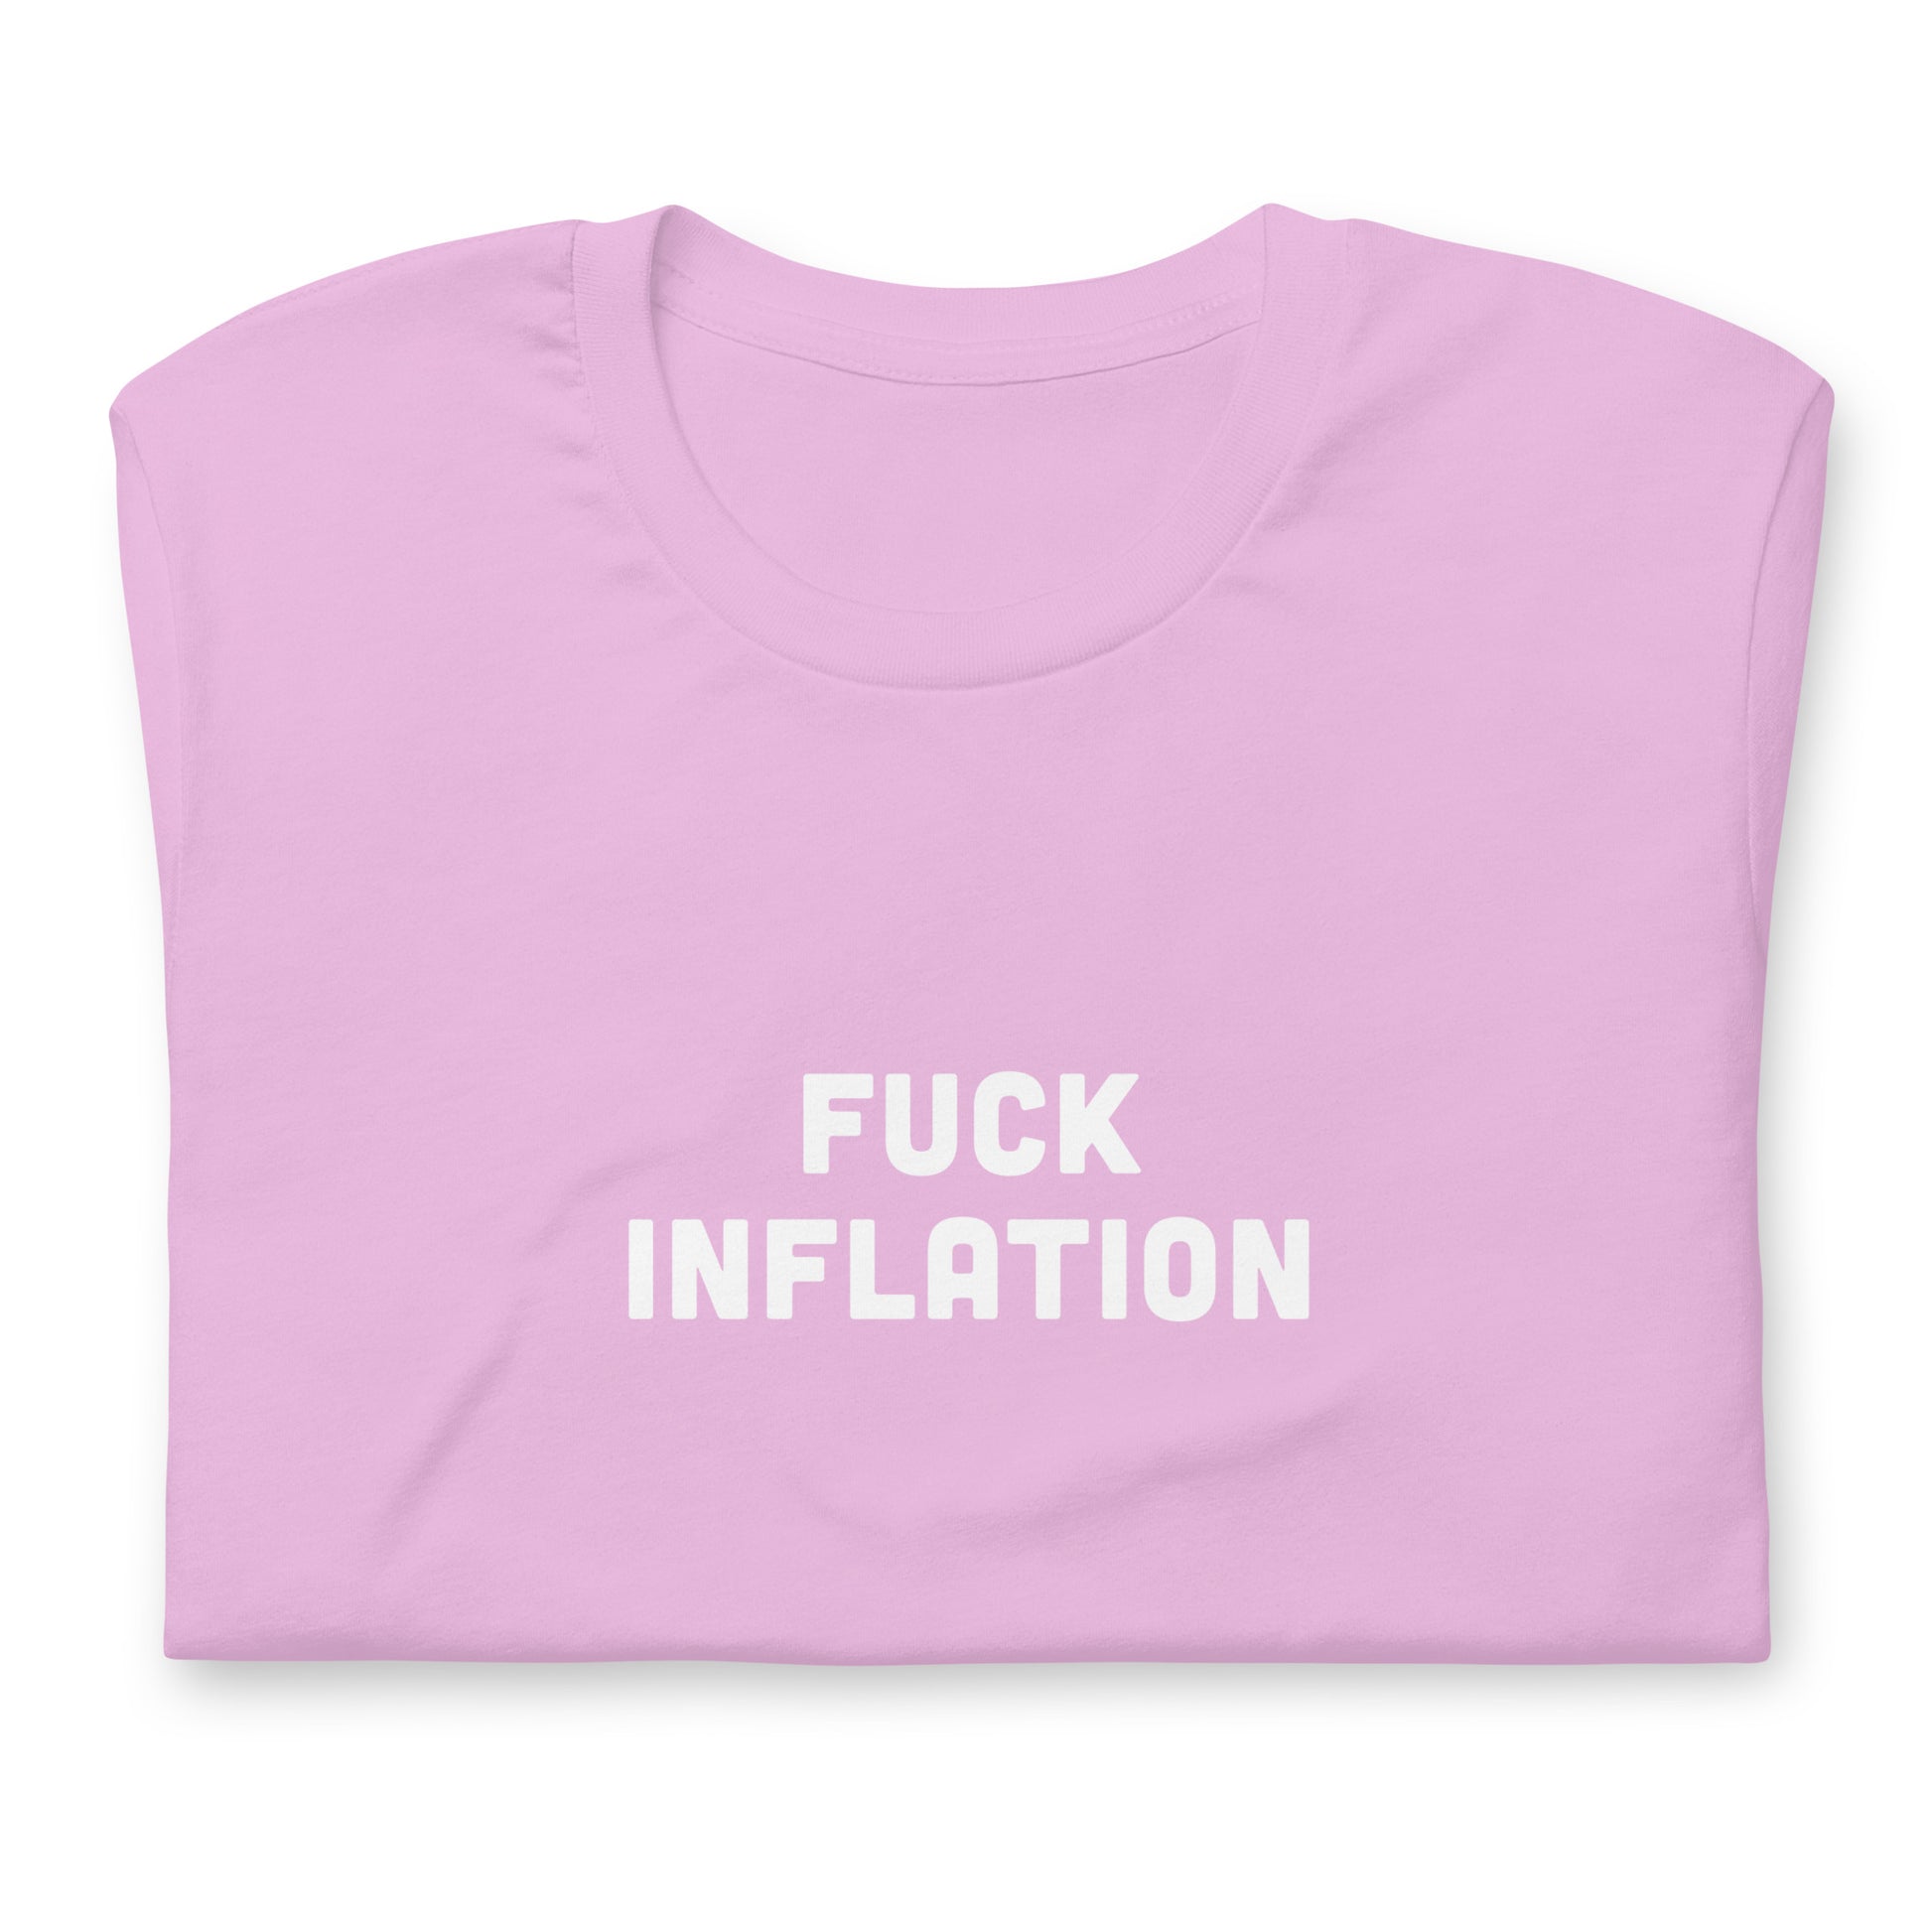 Fuck Inflation T-Shirt 1 Size S Color Asphalt